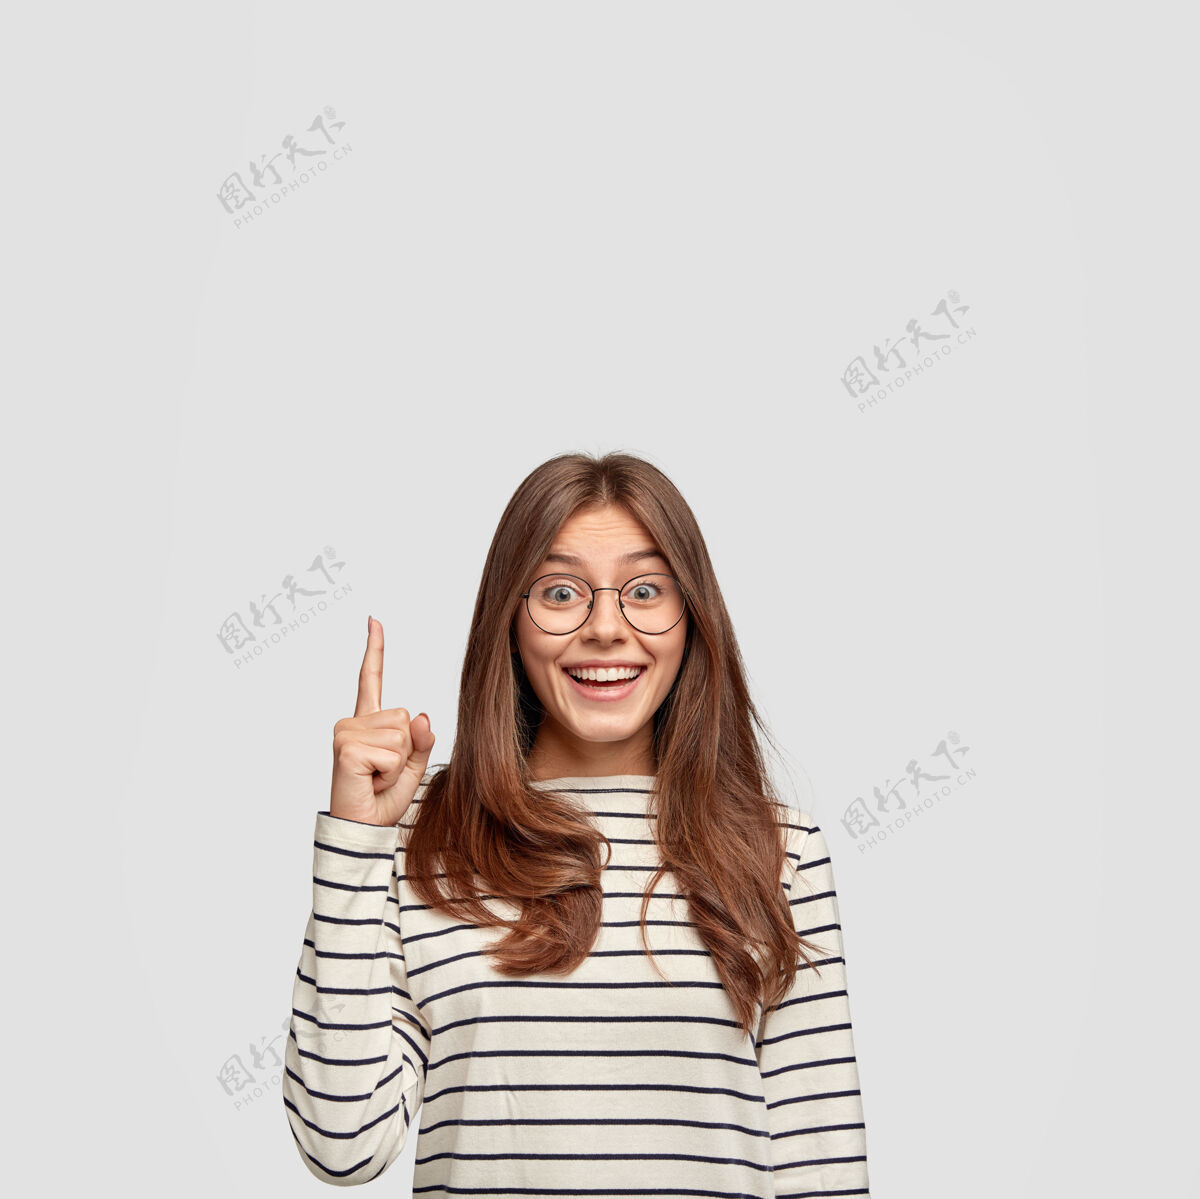 手指独立拍摄的开朗白种女人直发 展示自由空间 用食指点出你的广告内容 穿着休闲条纹毛衣 隔着白墙眼镜眼镜白种人